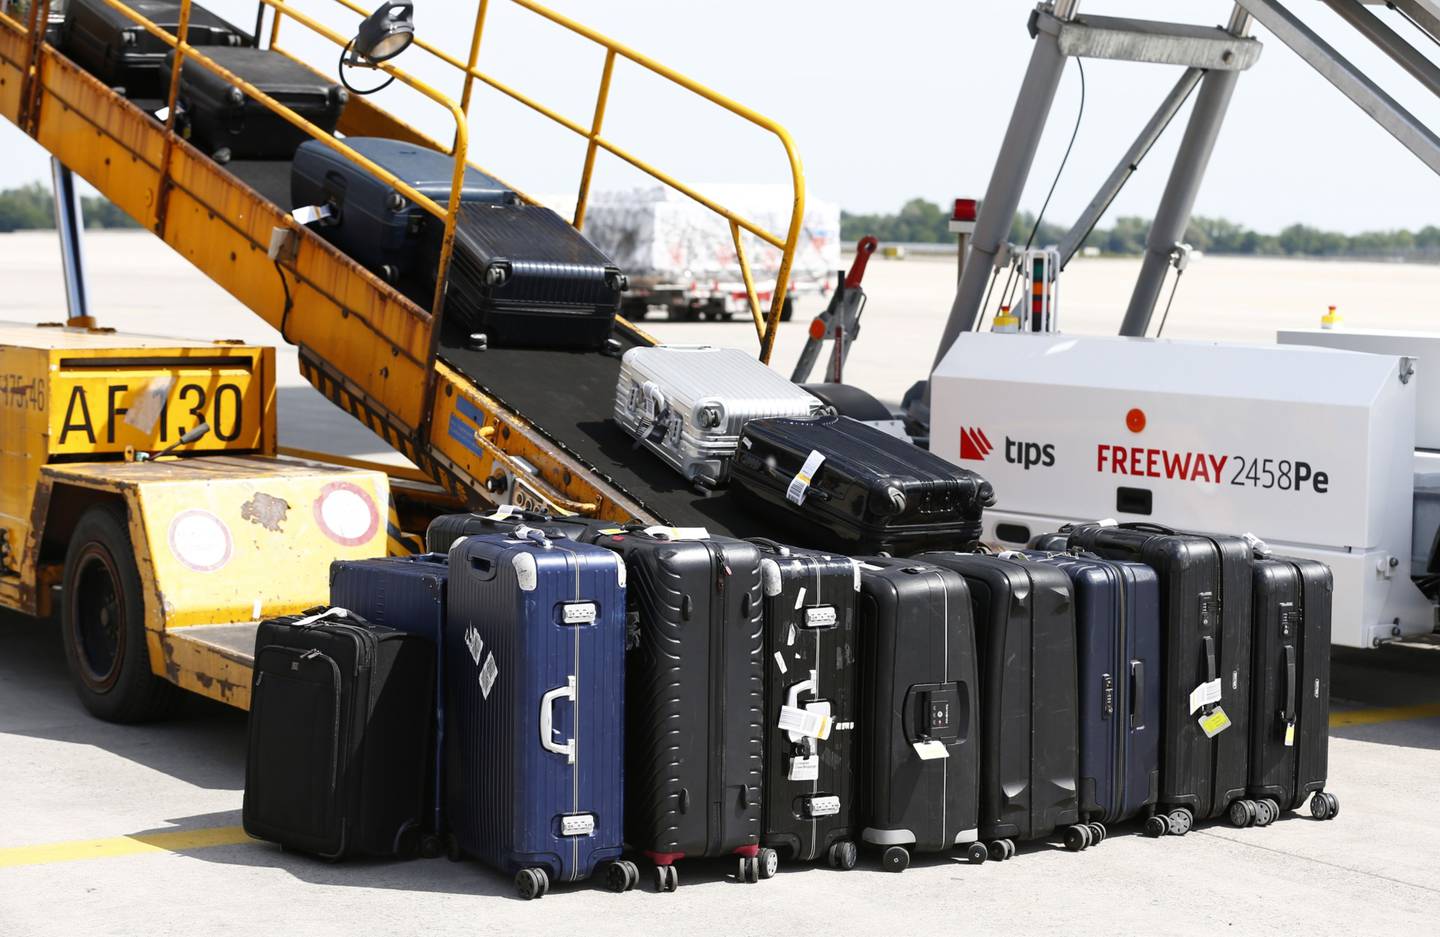 Reclamos por pérdida de equipaje suben un 30% comparado a 2019: Aseguradora